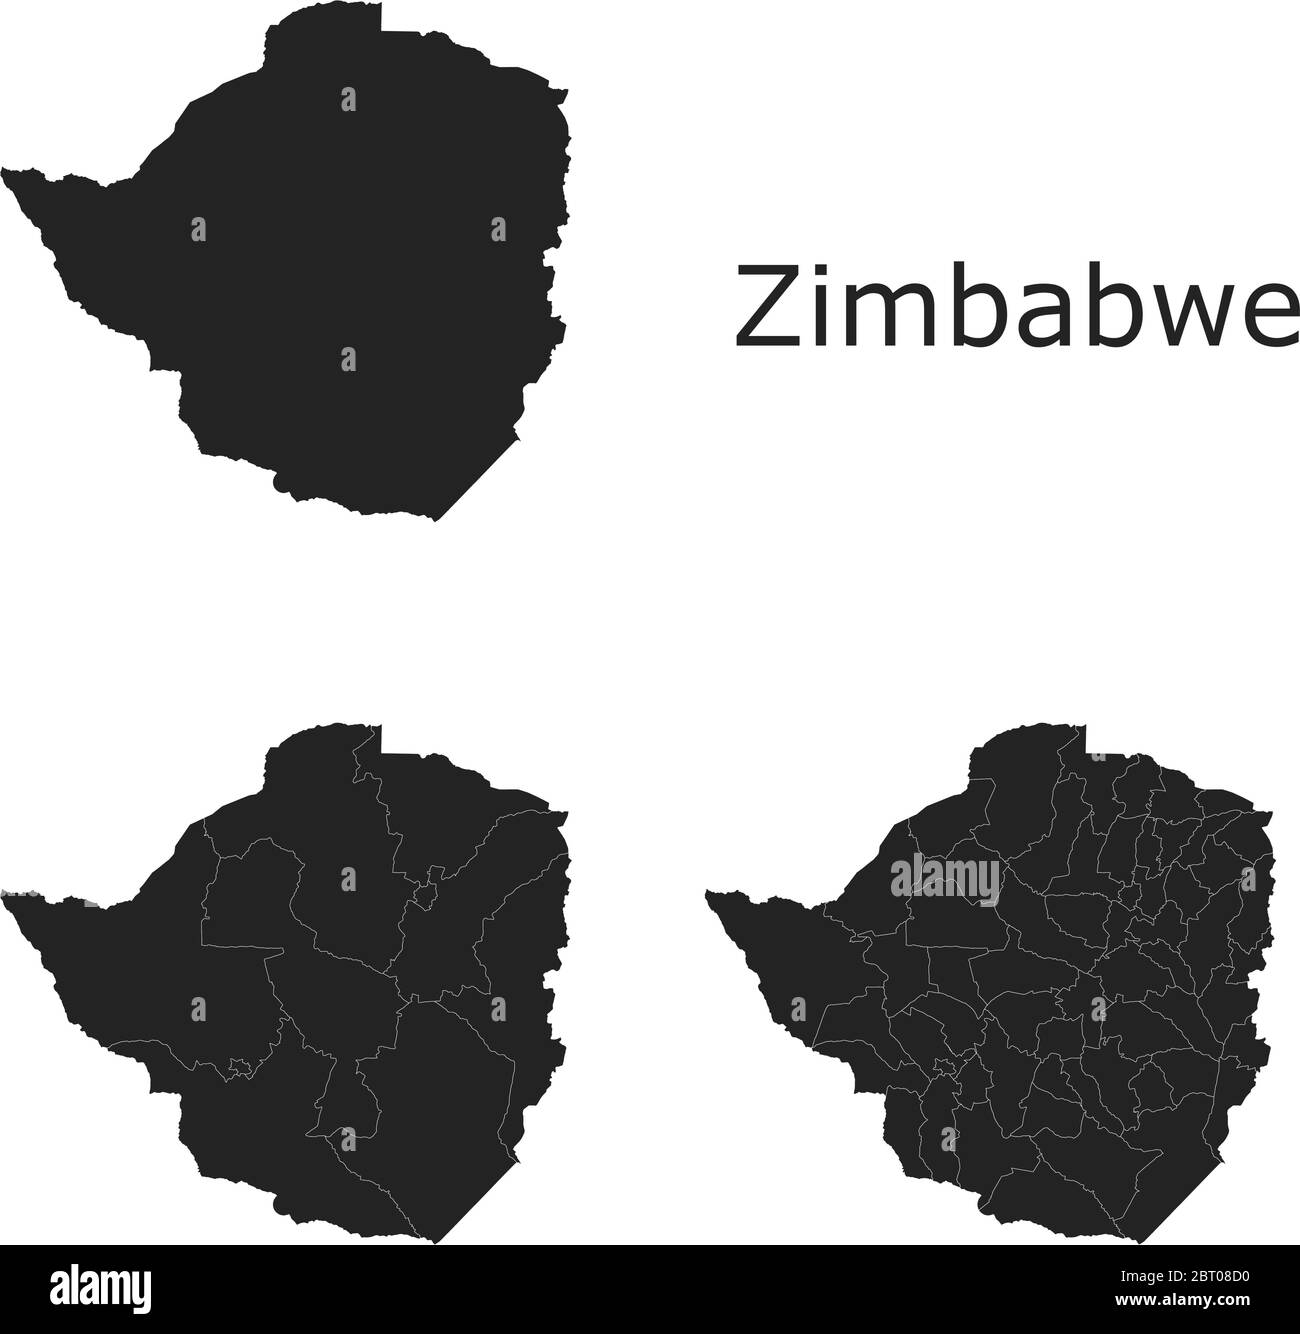 Cartes vectorielles du Zimbabwe avec régions administratives, municipalités, départements, frontières Illustration de Vecteur